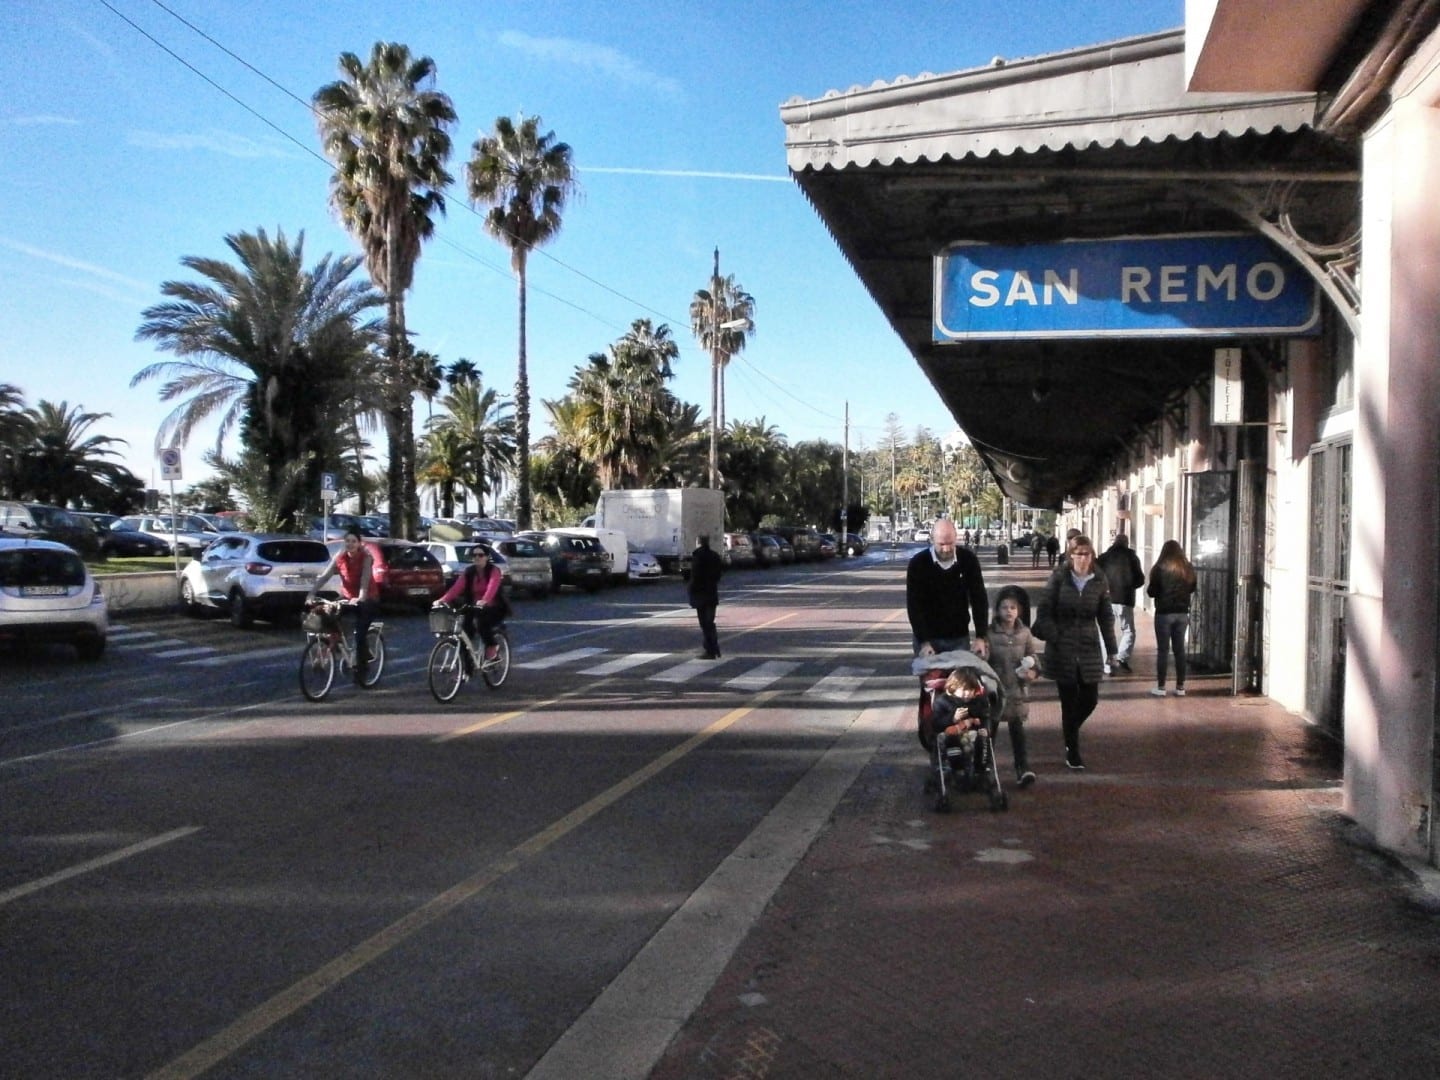 La antigua estación de tren cerca de la costa, ahora es la estación de un carril bici. San Remo Italia